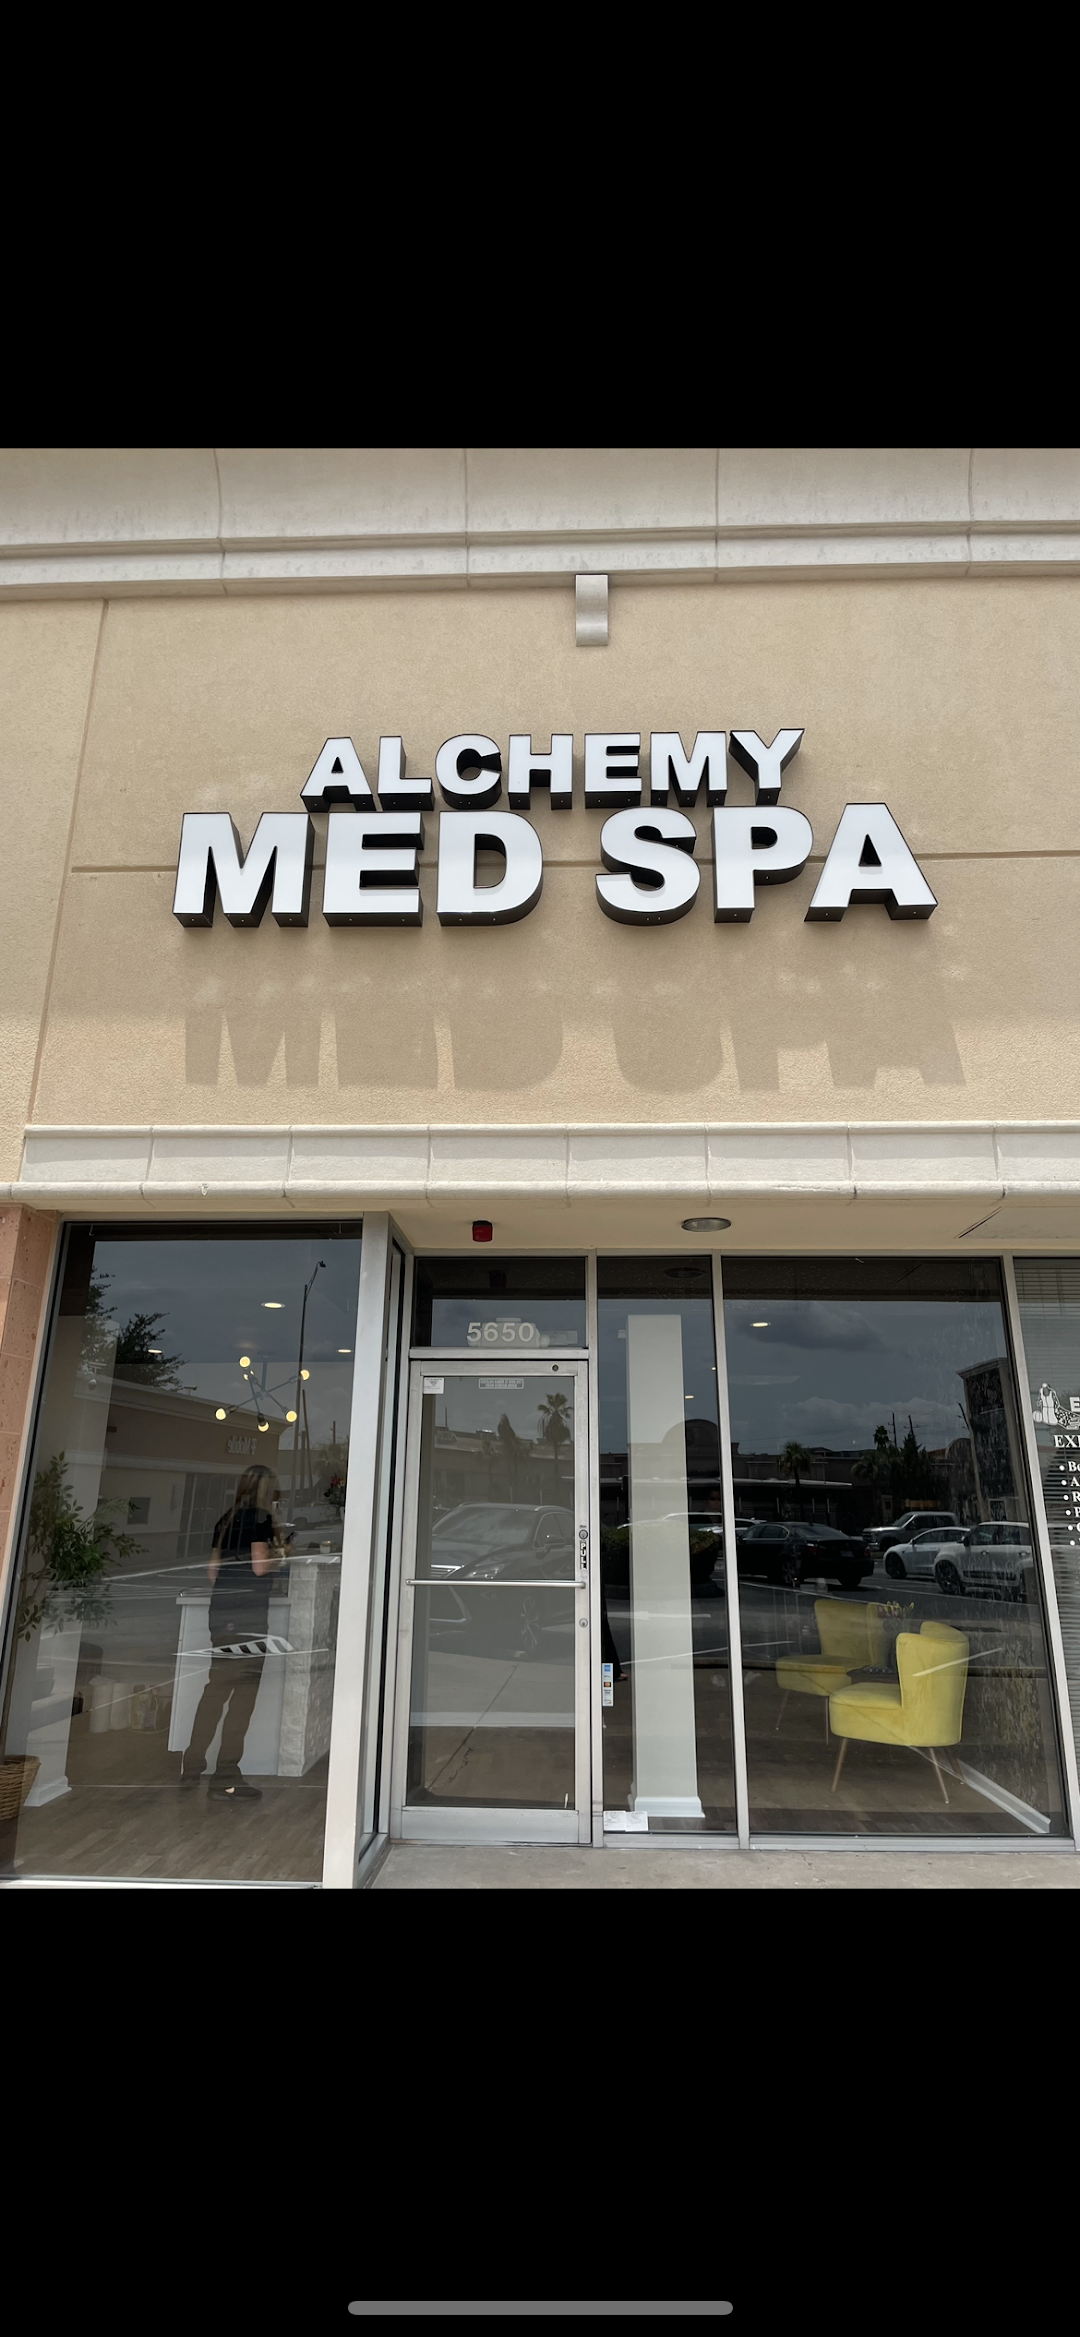 Alchemy Med Spa